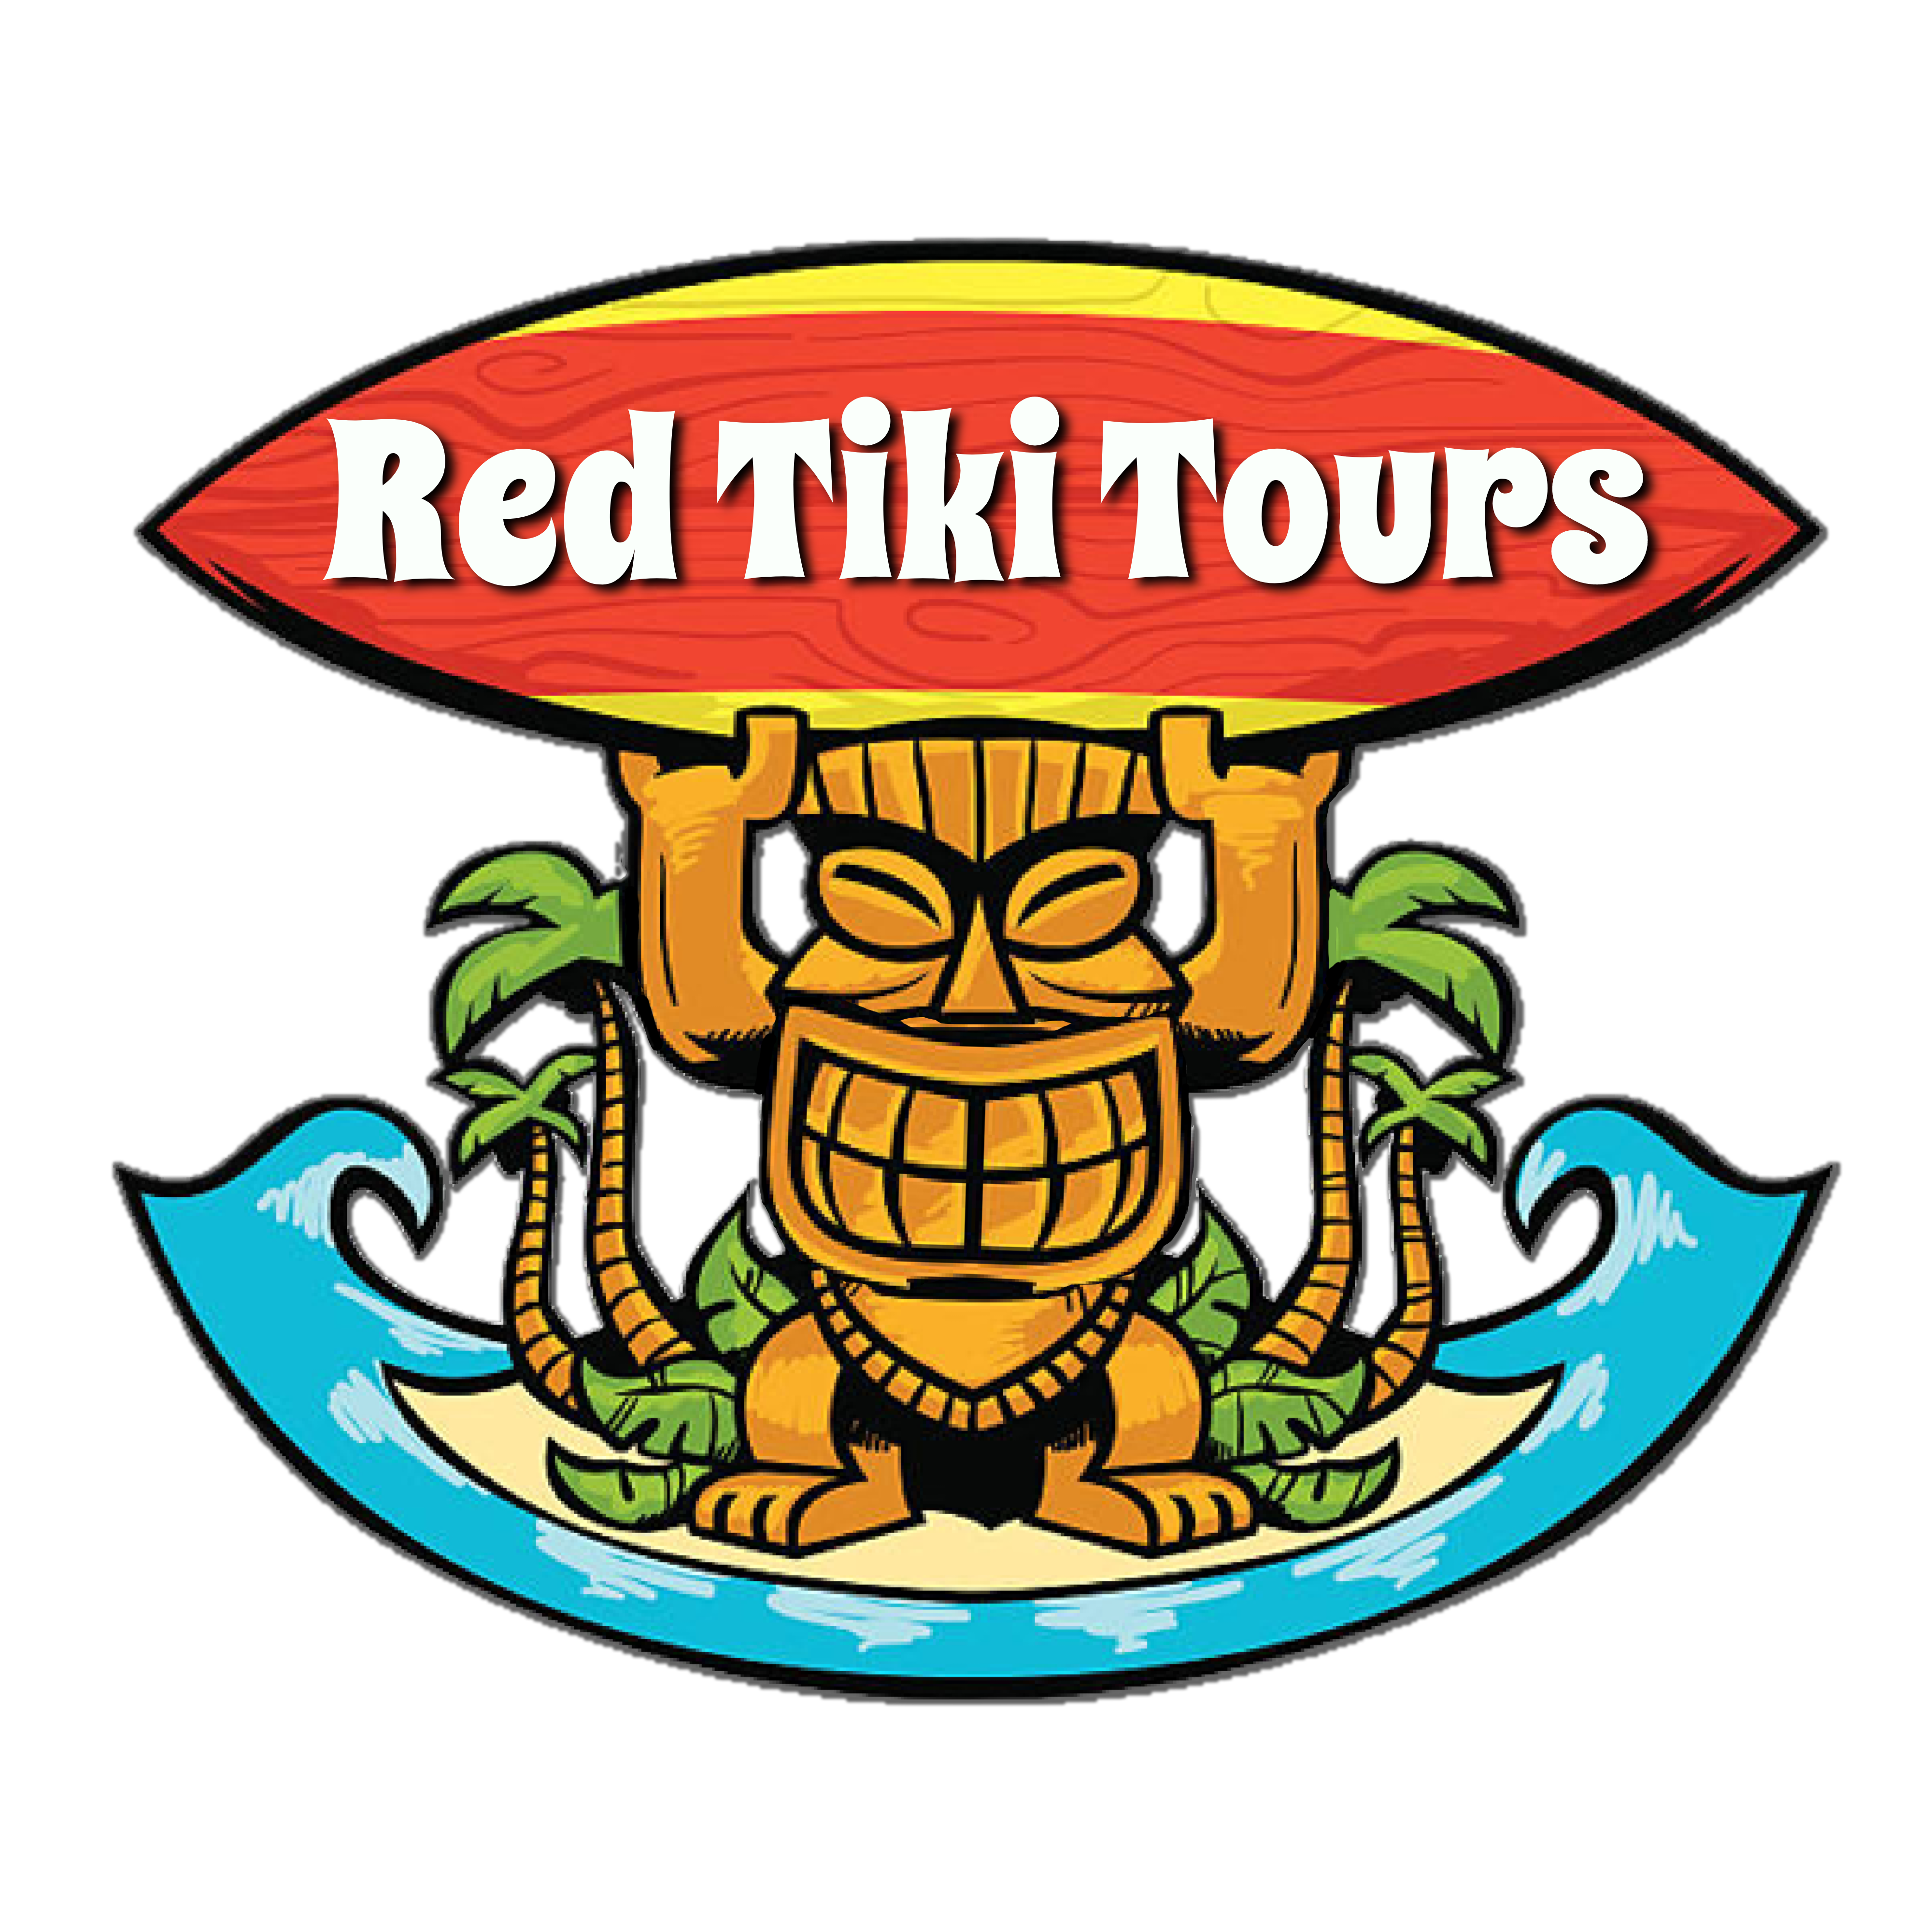 Red Tiki Tours